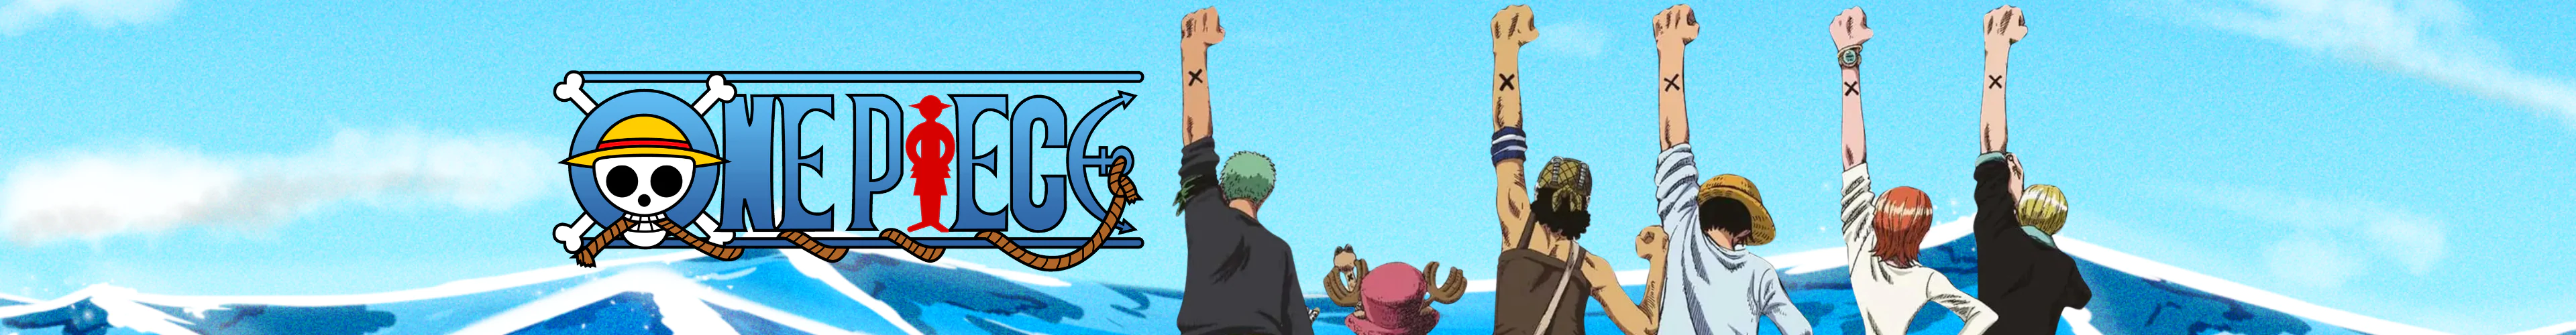 One Piece plüsche banner